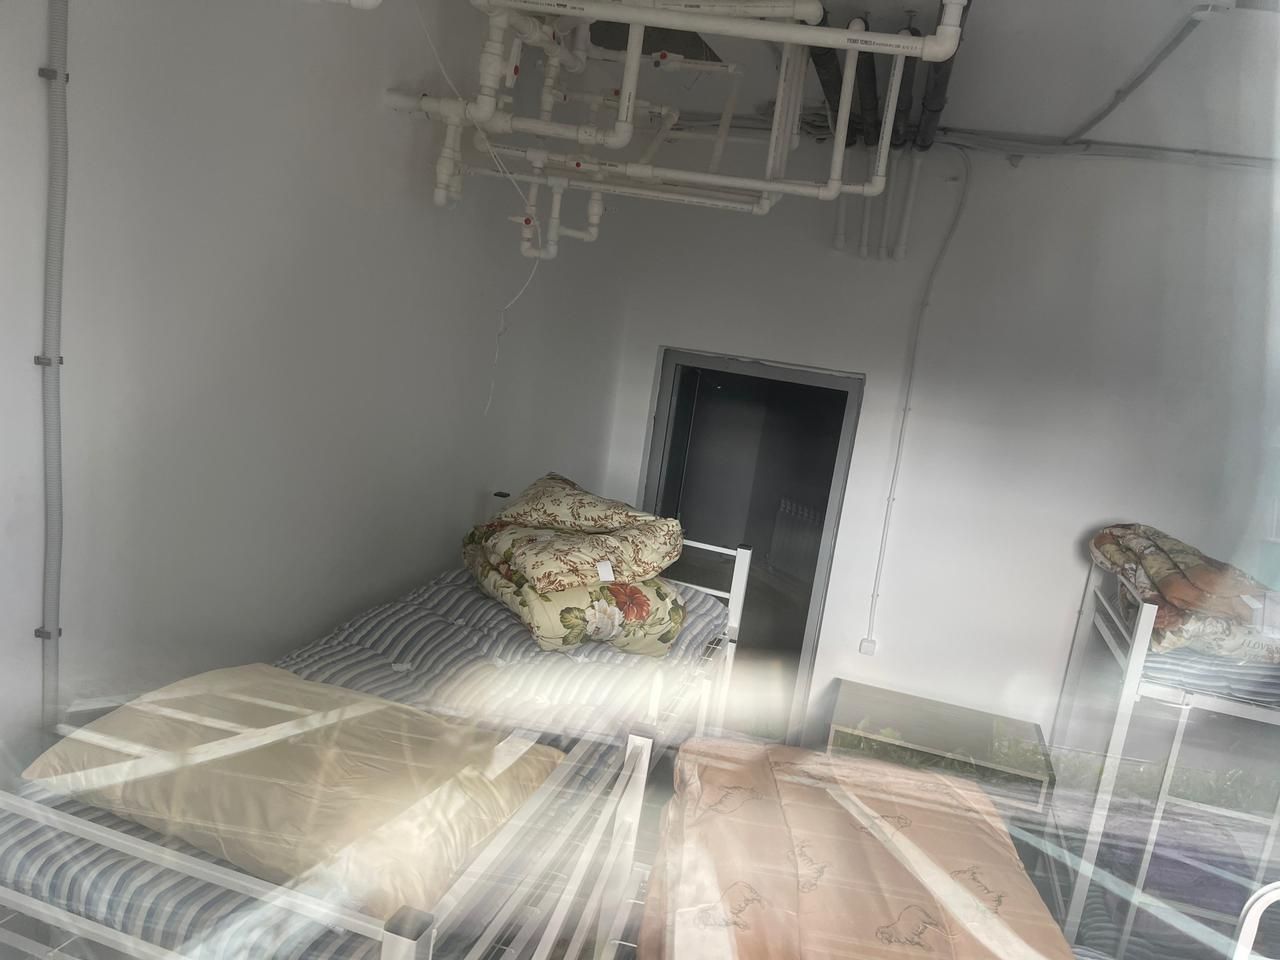 «Боимся, что организуют хостел»: подвал дома в Челнах оборудовали под жилье